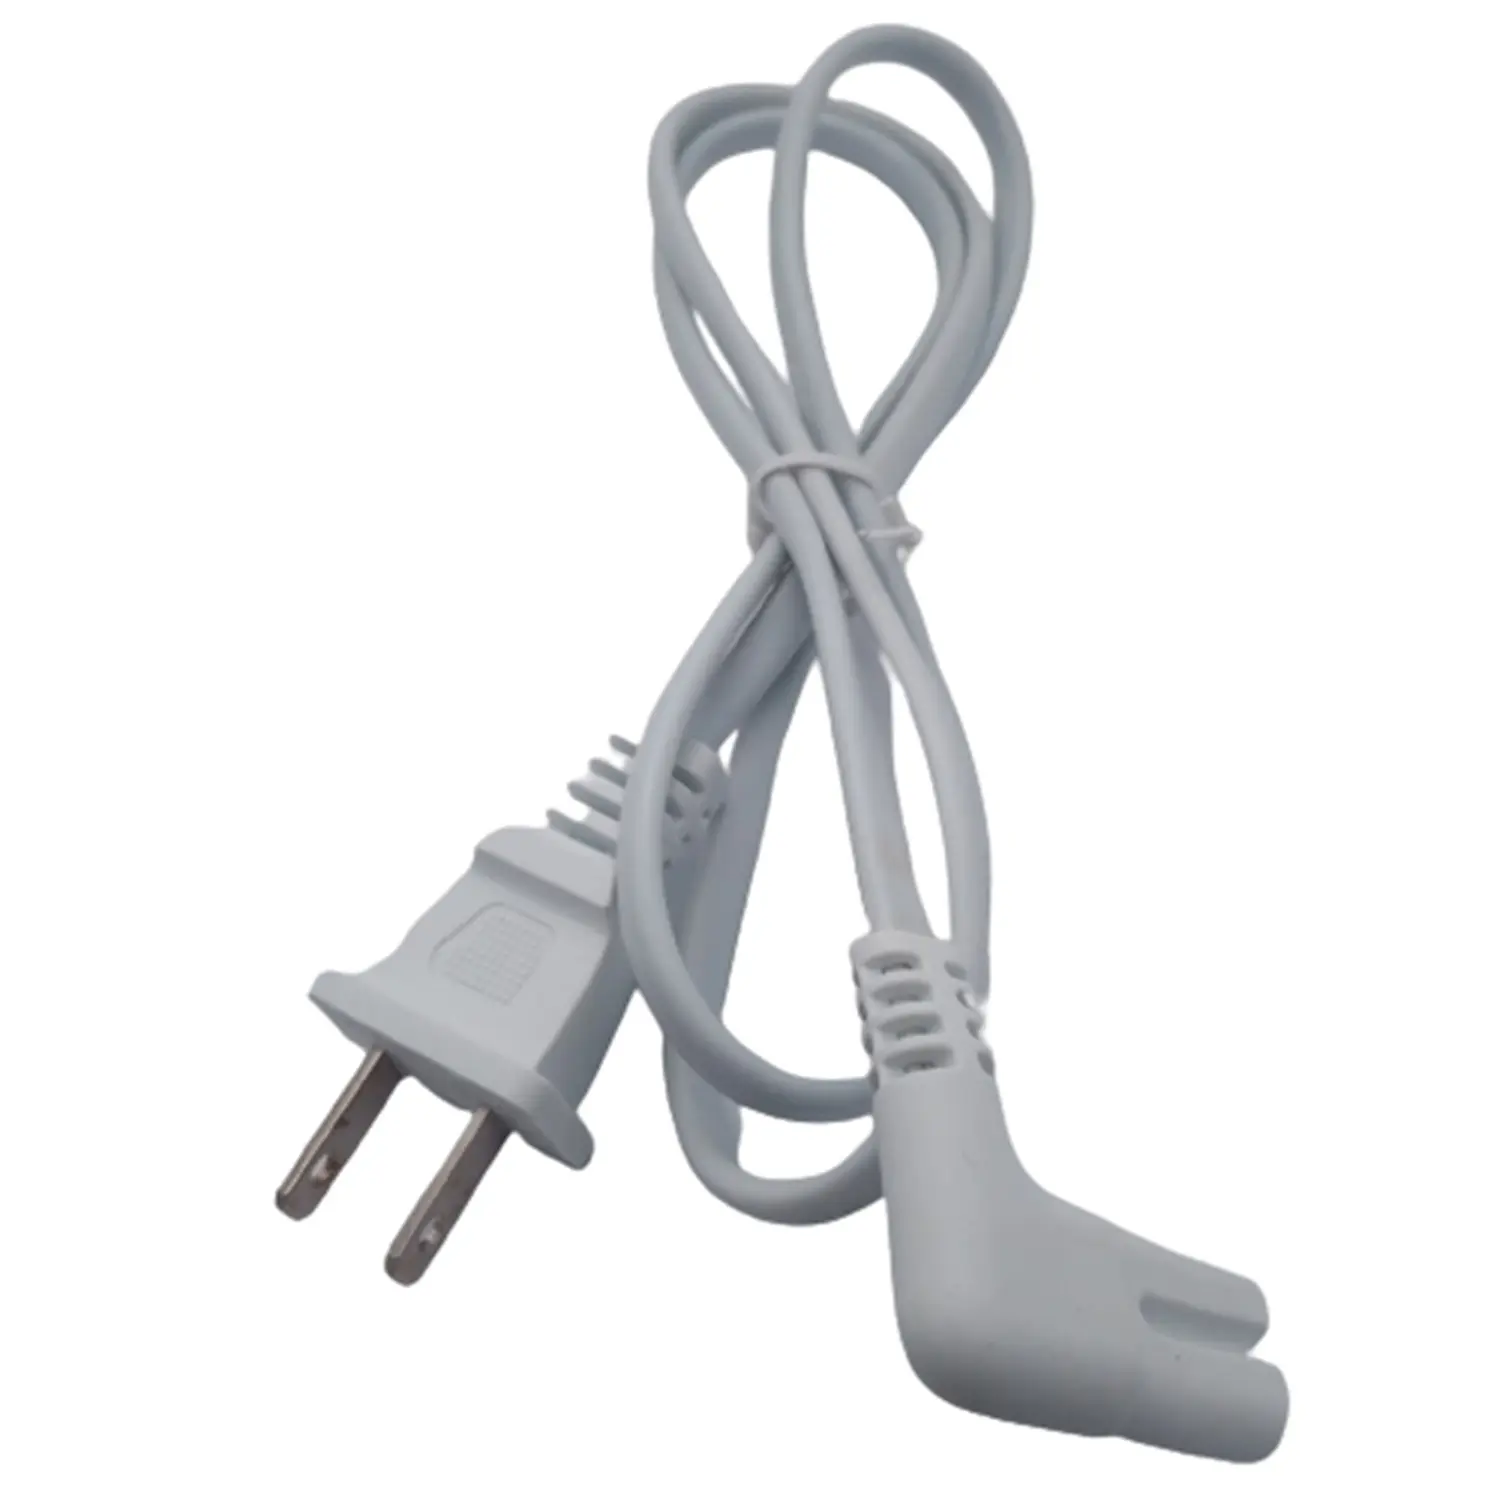 Vente chaude blanc 18AWG en forme de L IEC C7 connecteur électrique 2 broches prise américaine cordon d'alimentation secteur pour ordinateur portable